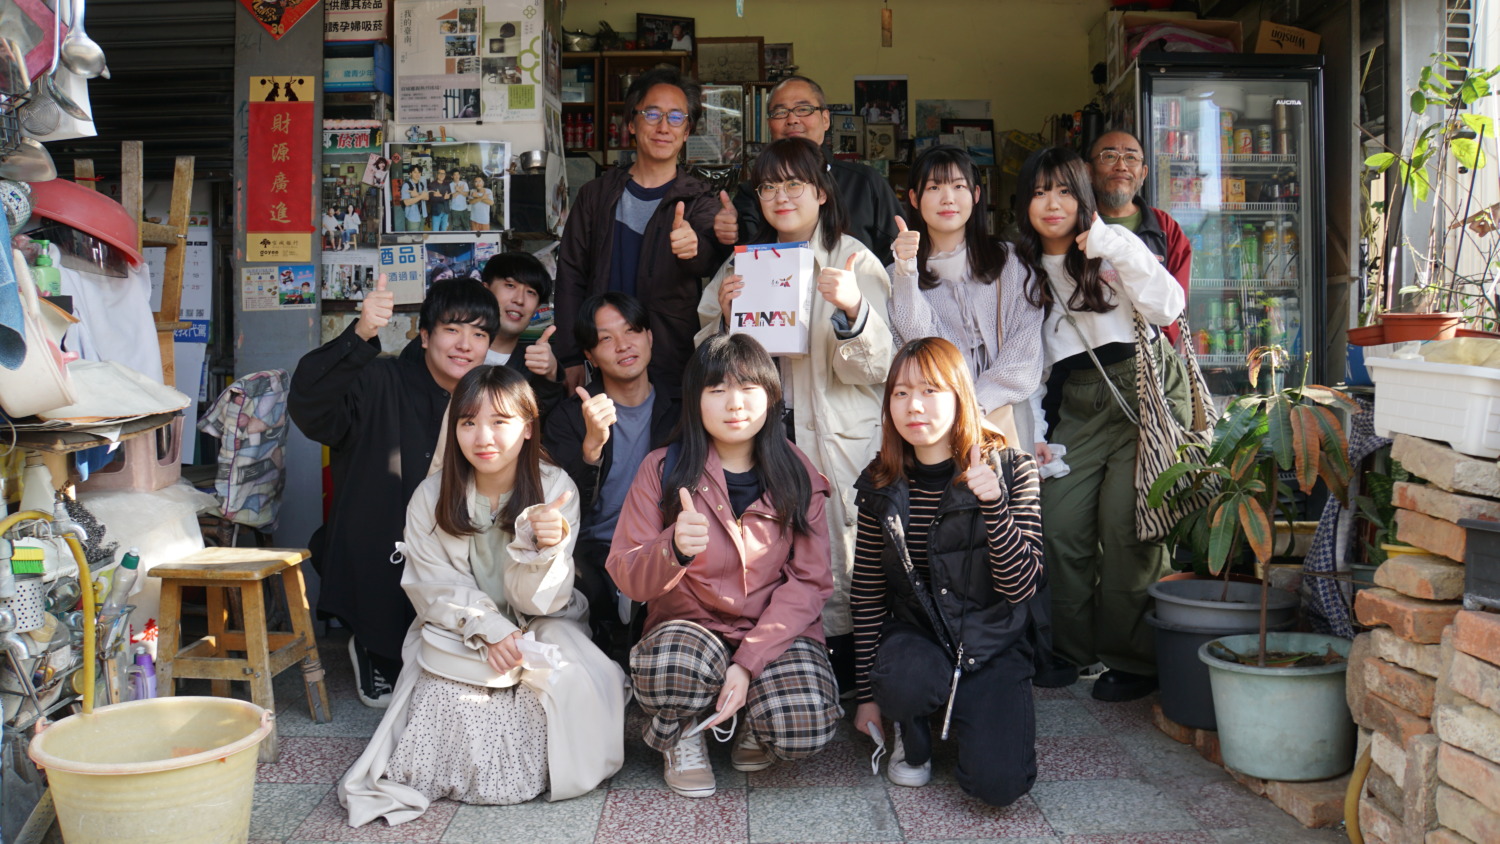 日本大東文化大學社會學系 大學生蒞南考察